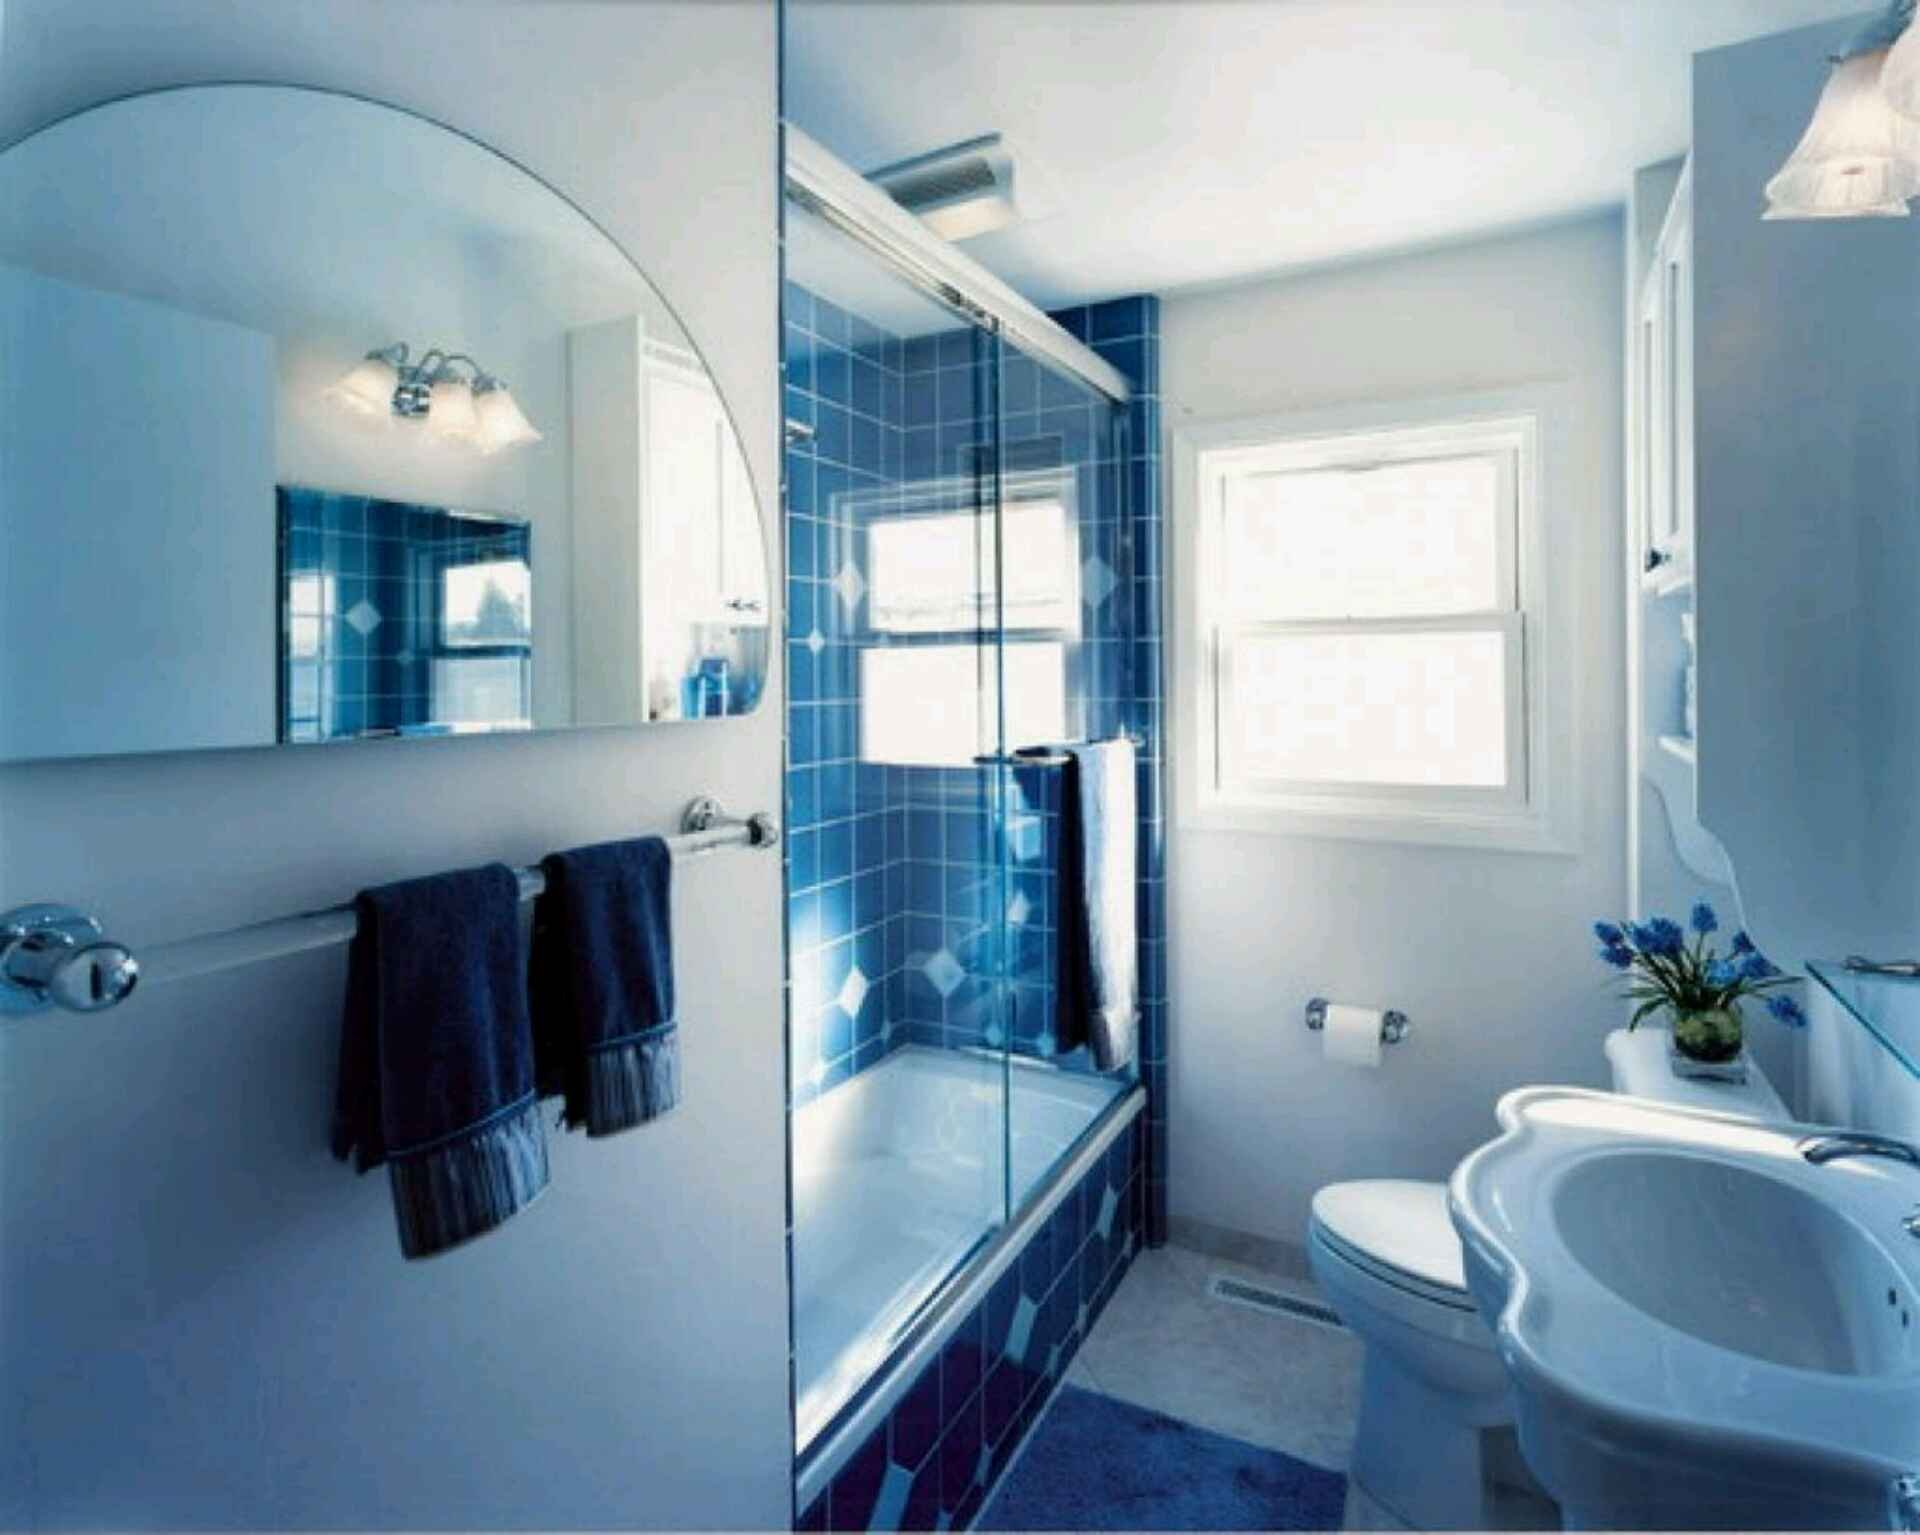 Ванная комната дизайн мал размер. Ванная комната. Обустройство ванной комнаты. Идеи для ванной комнаты. Дизайнерские решения для ванной.